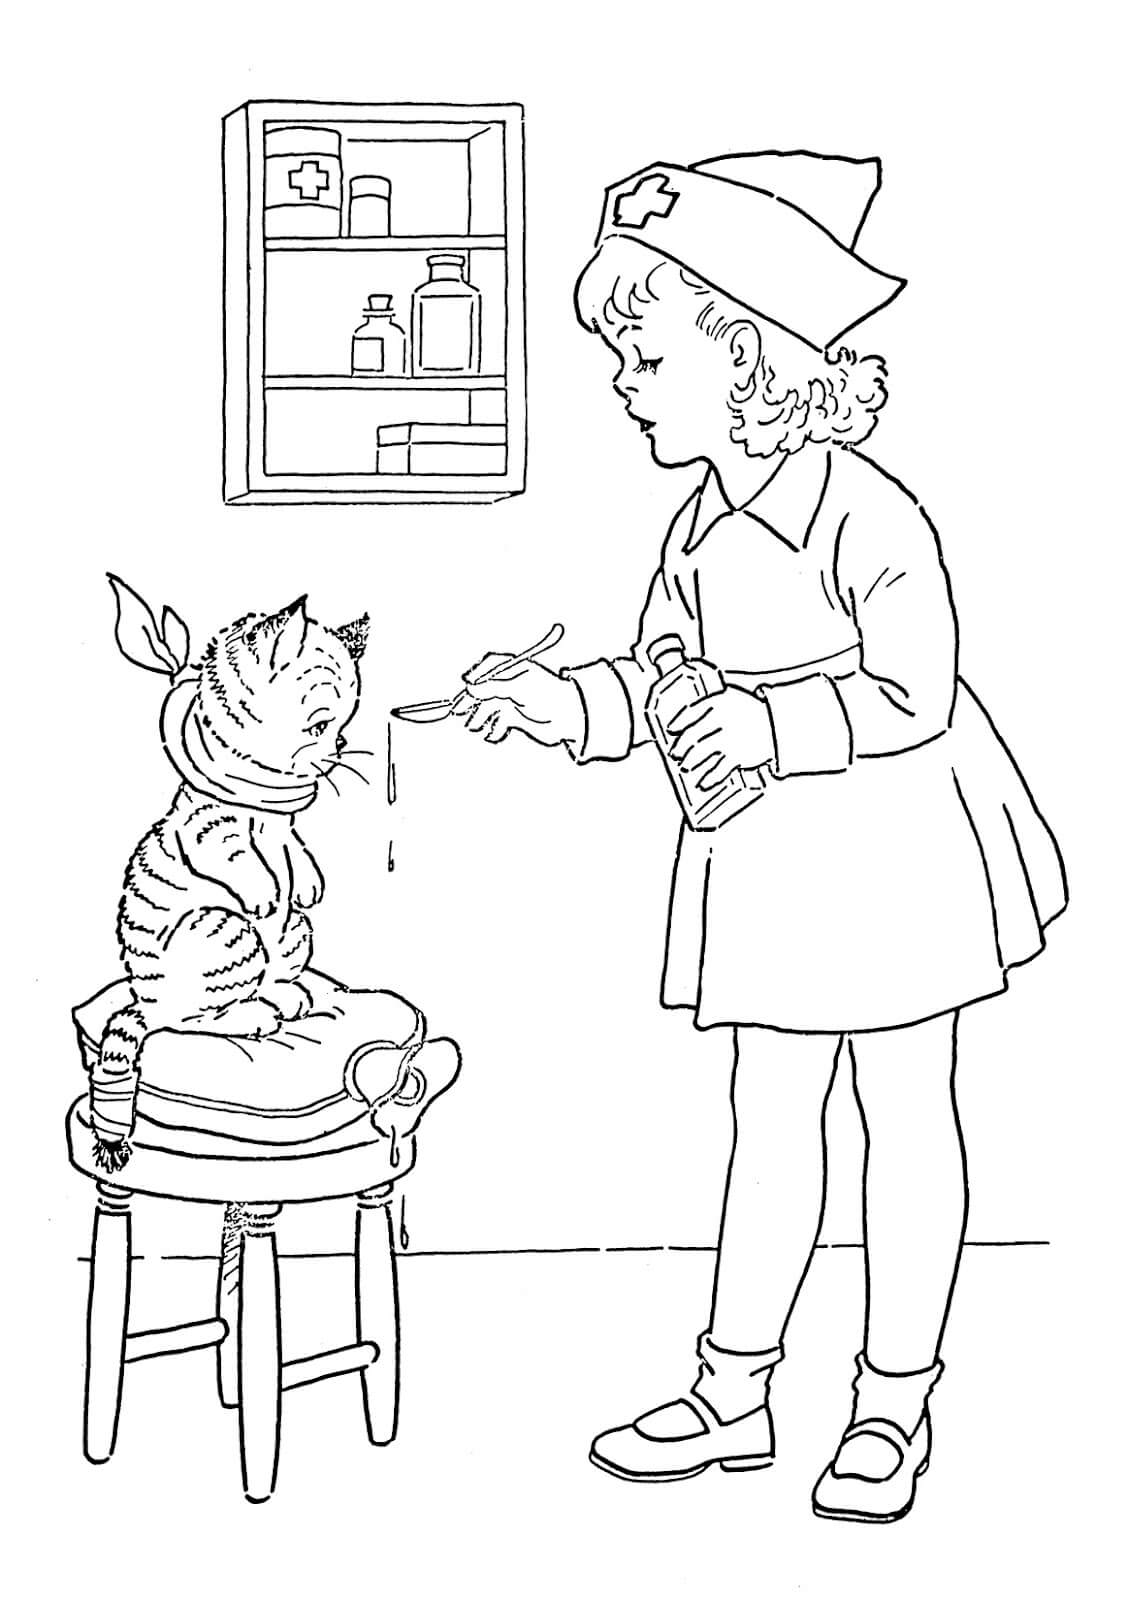 Enfermera Dando Medicina al Gato